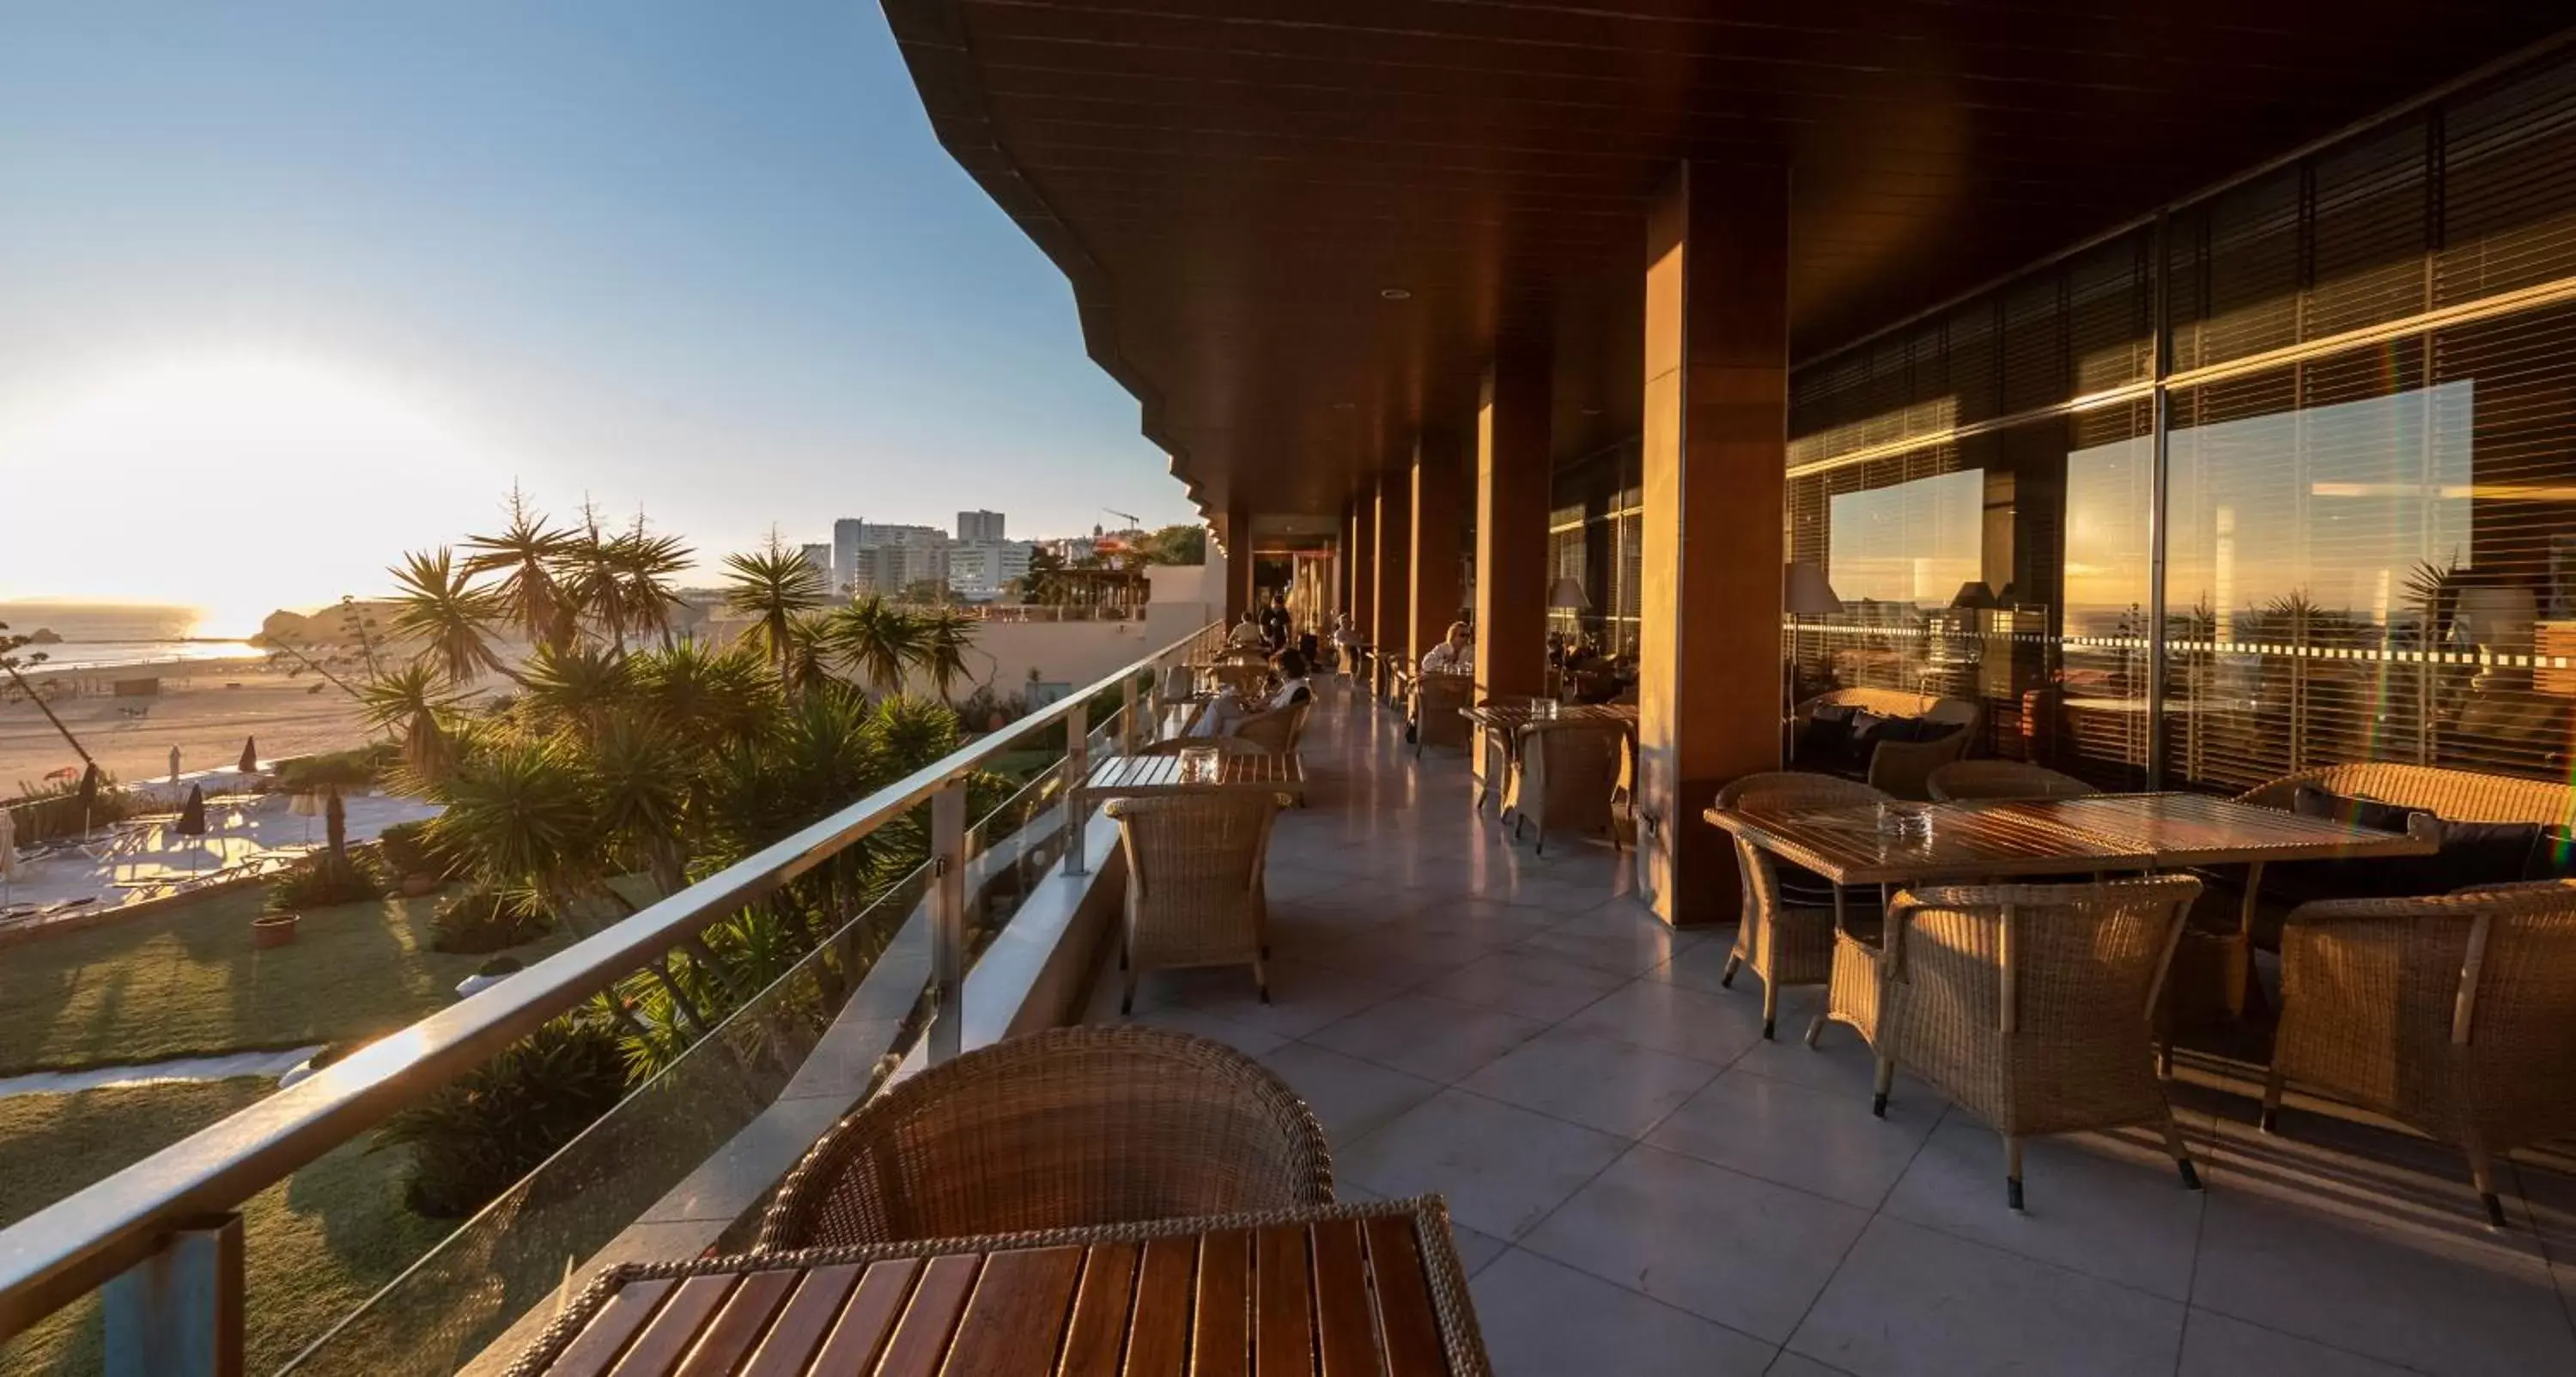 Balcony/Terrace in Algarve Casino Hotel